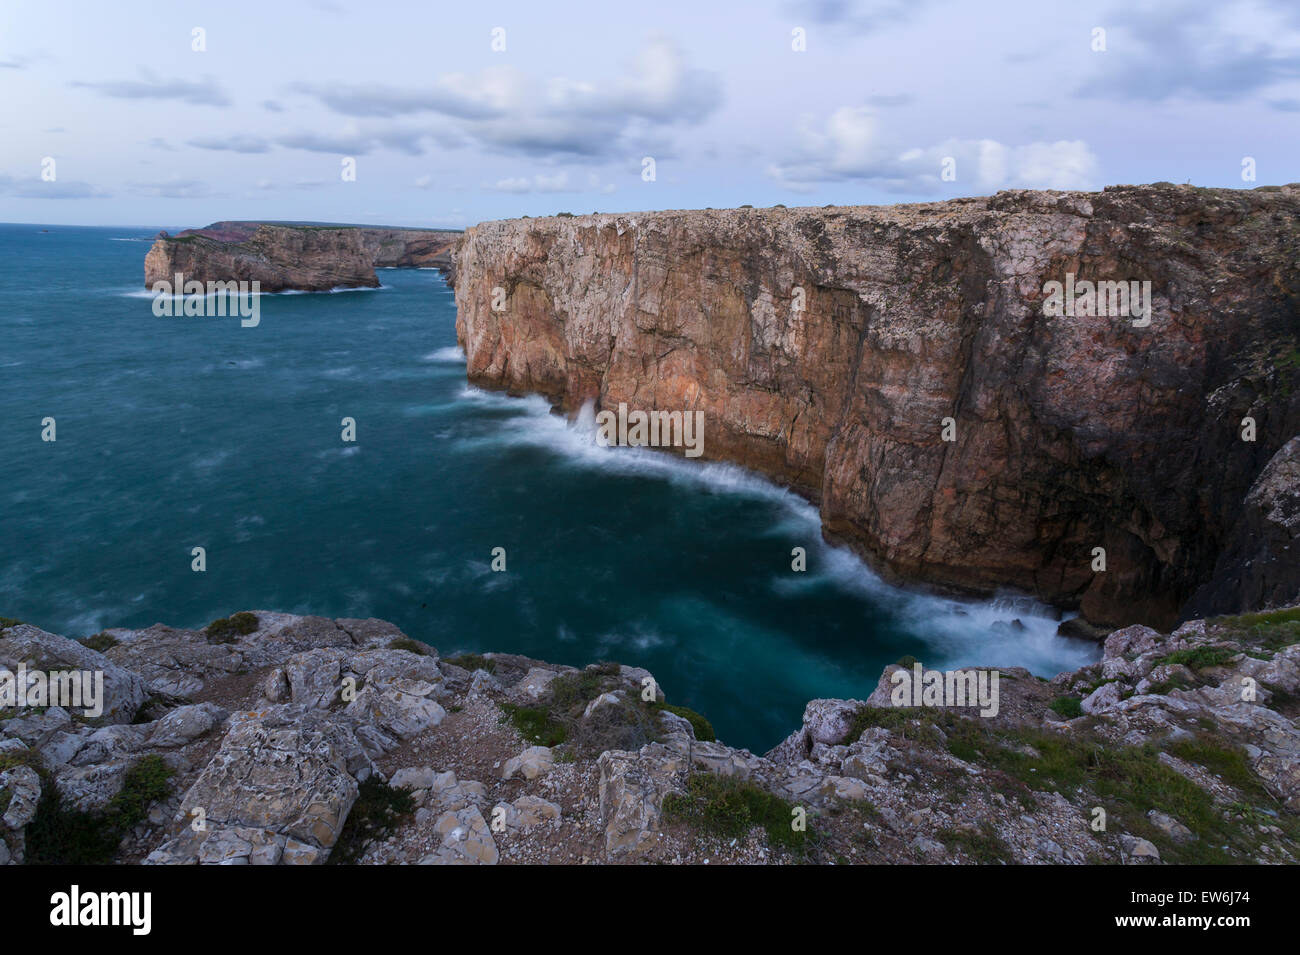 Le scogliere di Sagres e le onde dell'Atlantico nella regione di Algarve in Portogallo. Foto Stock